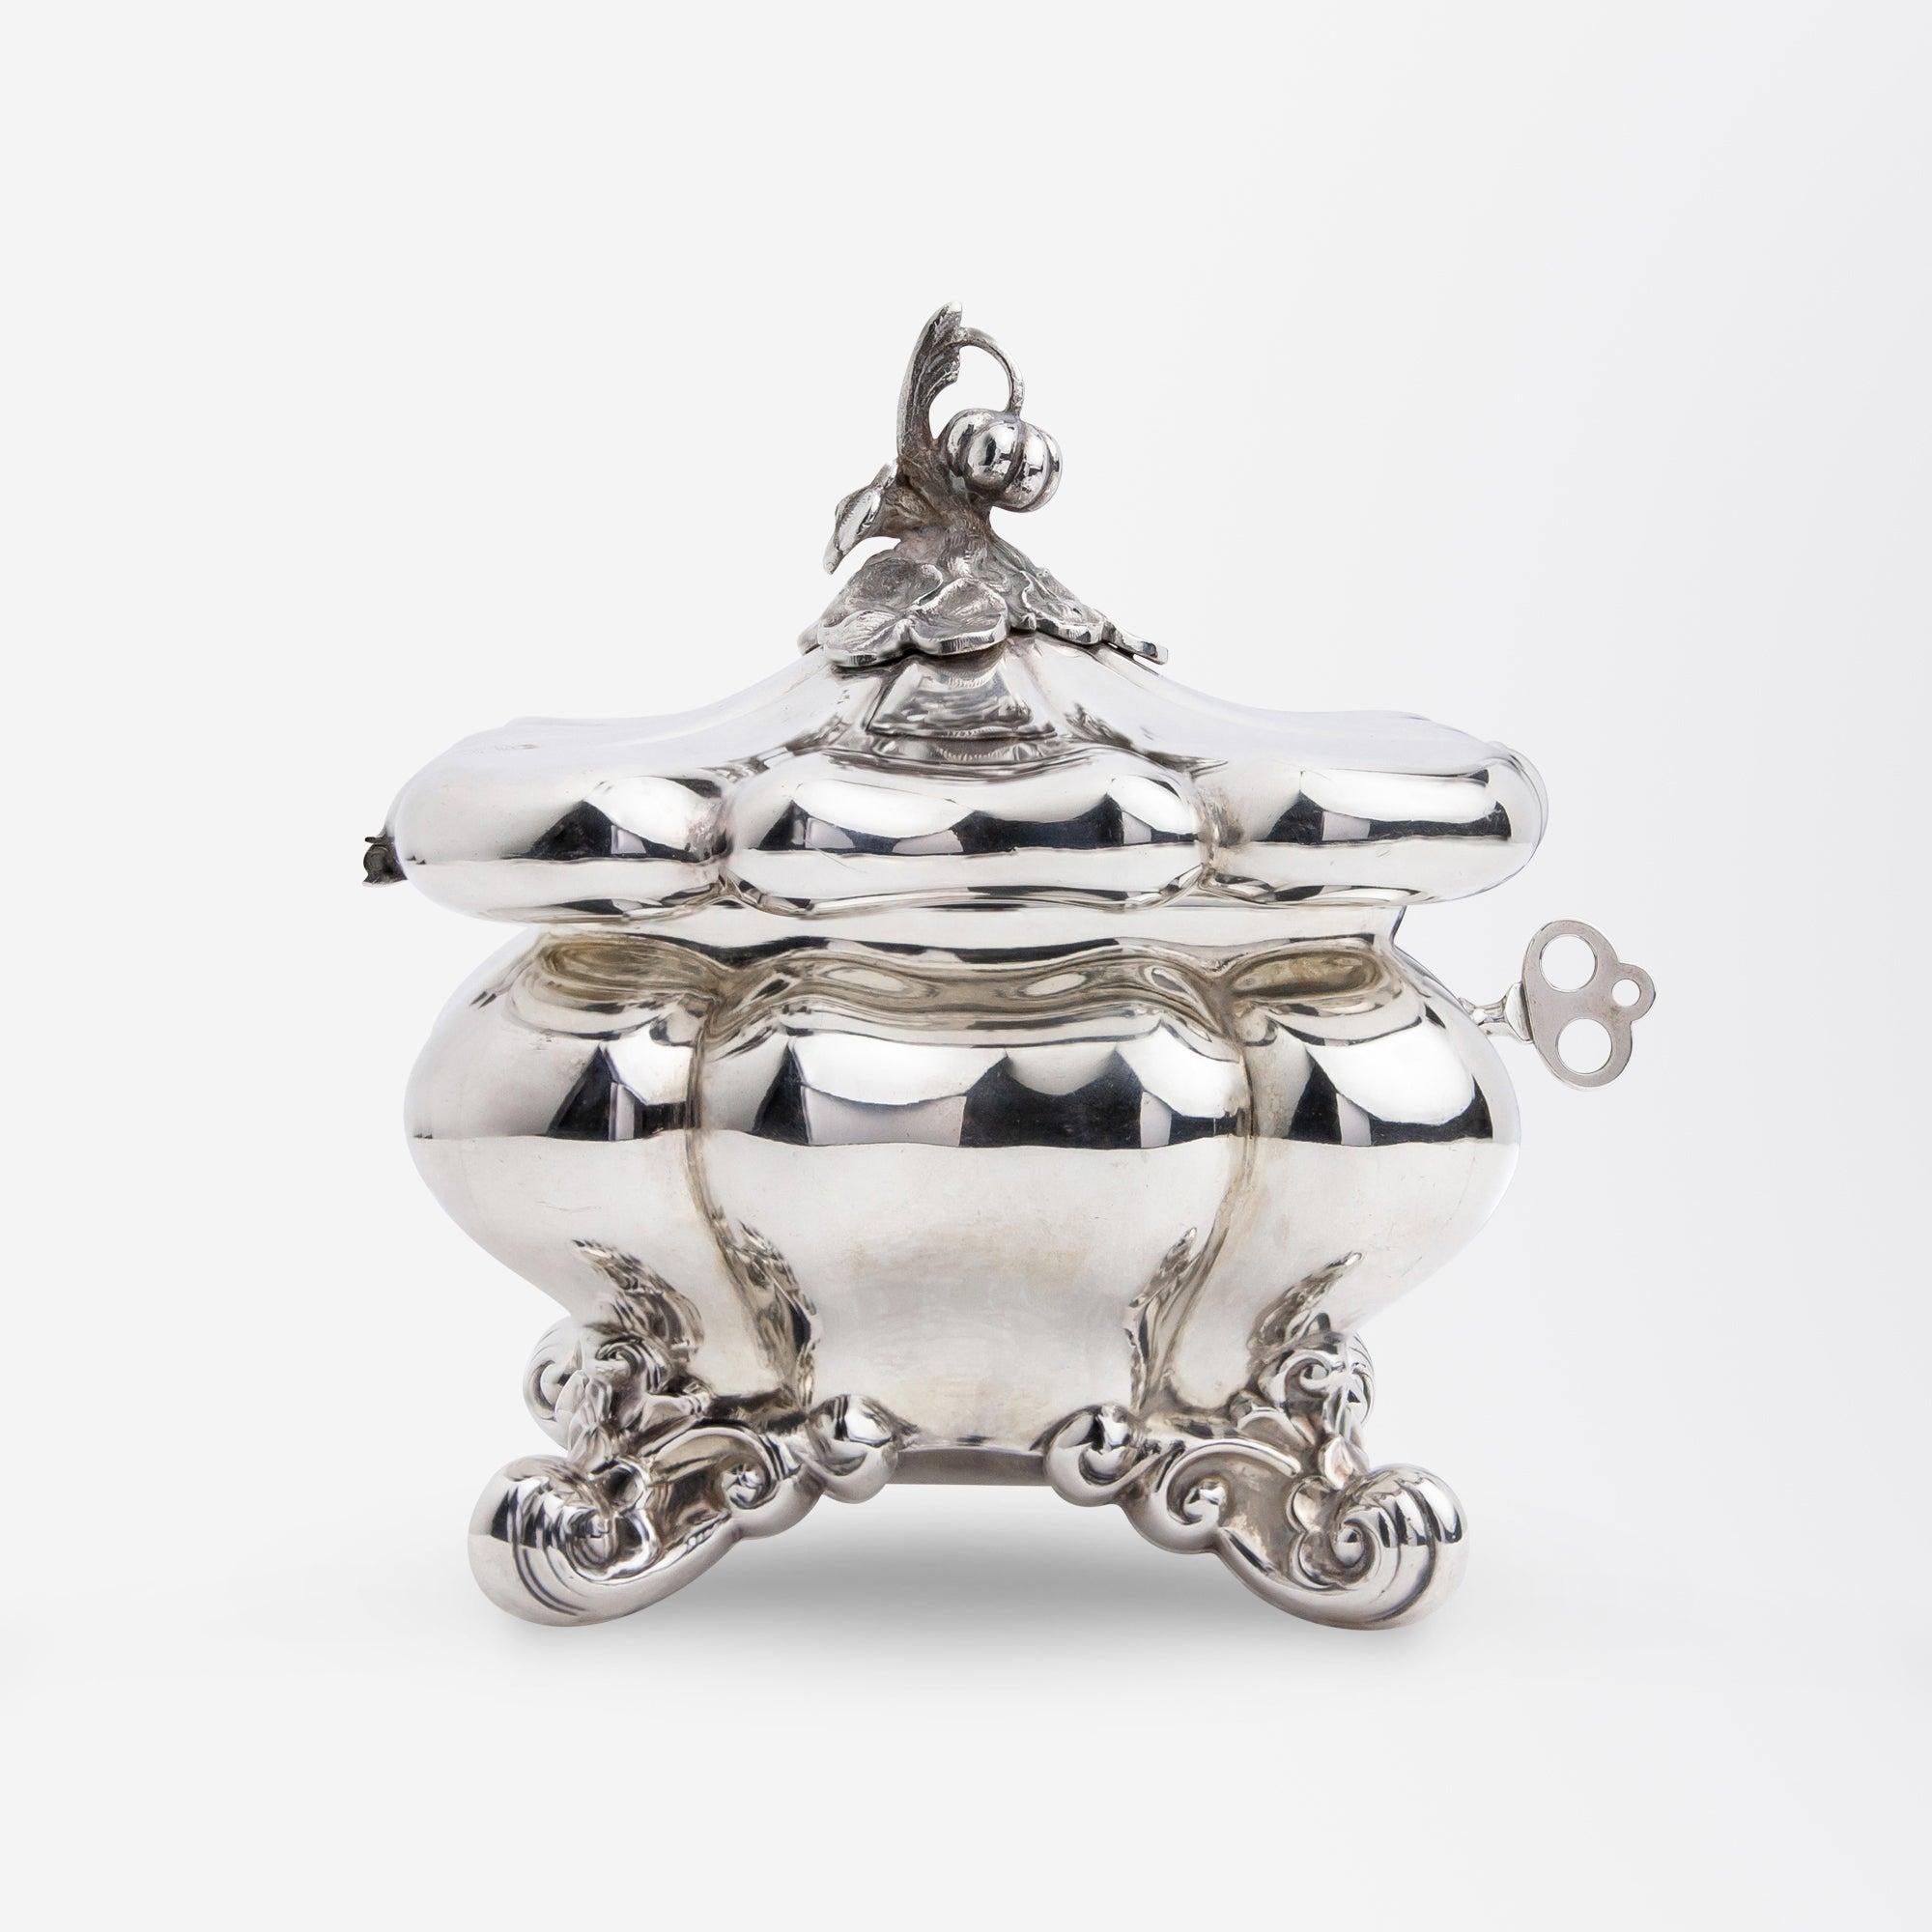 Baroque Swedish Sterling Silver Box or Sugar Chest by Axel Gabriel Dufva